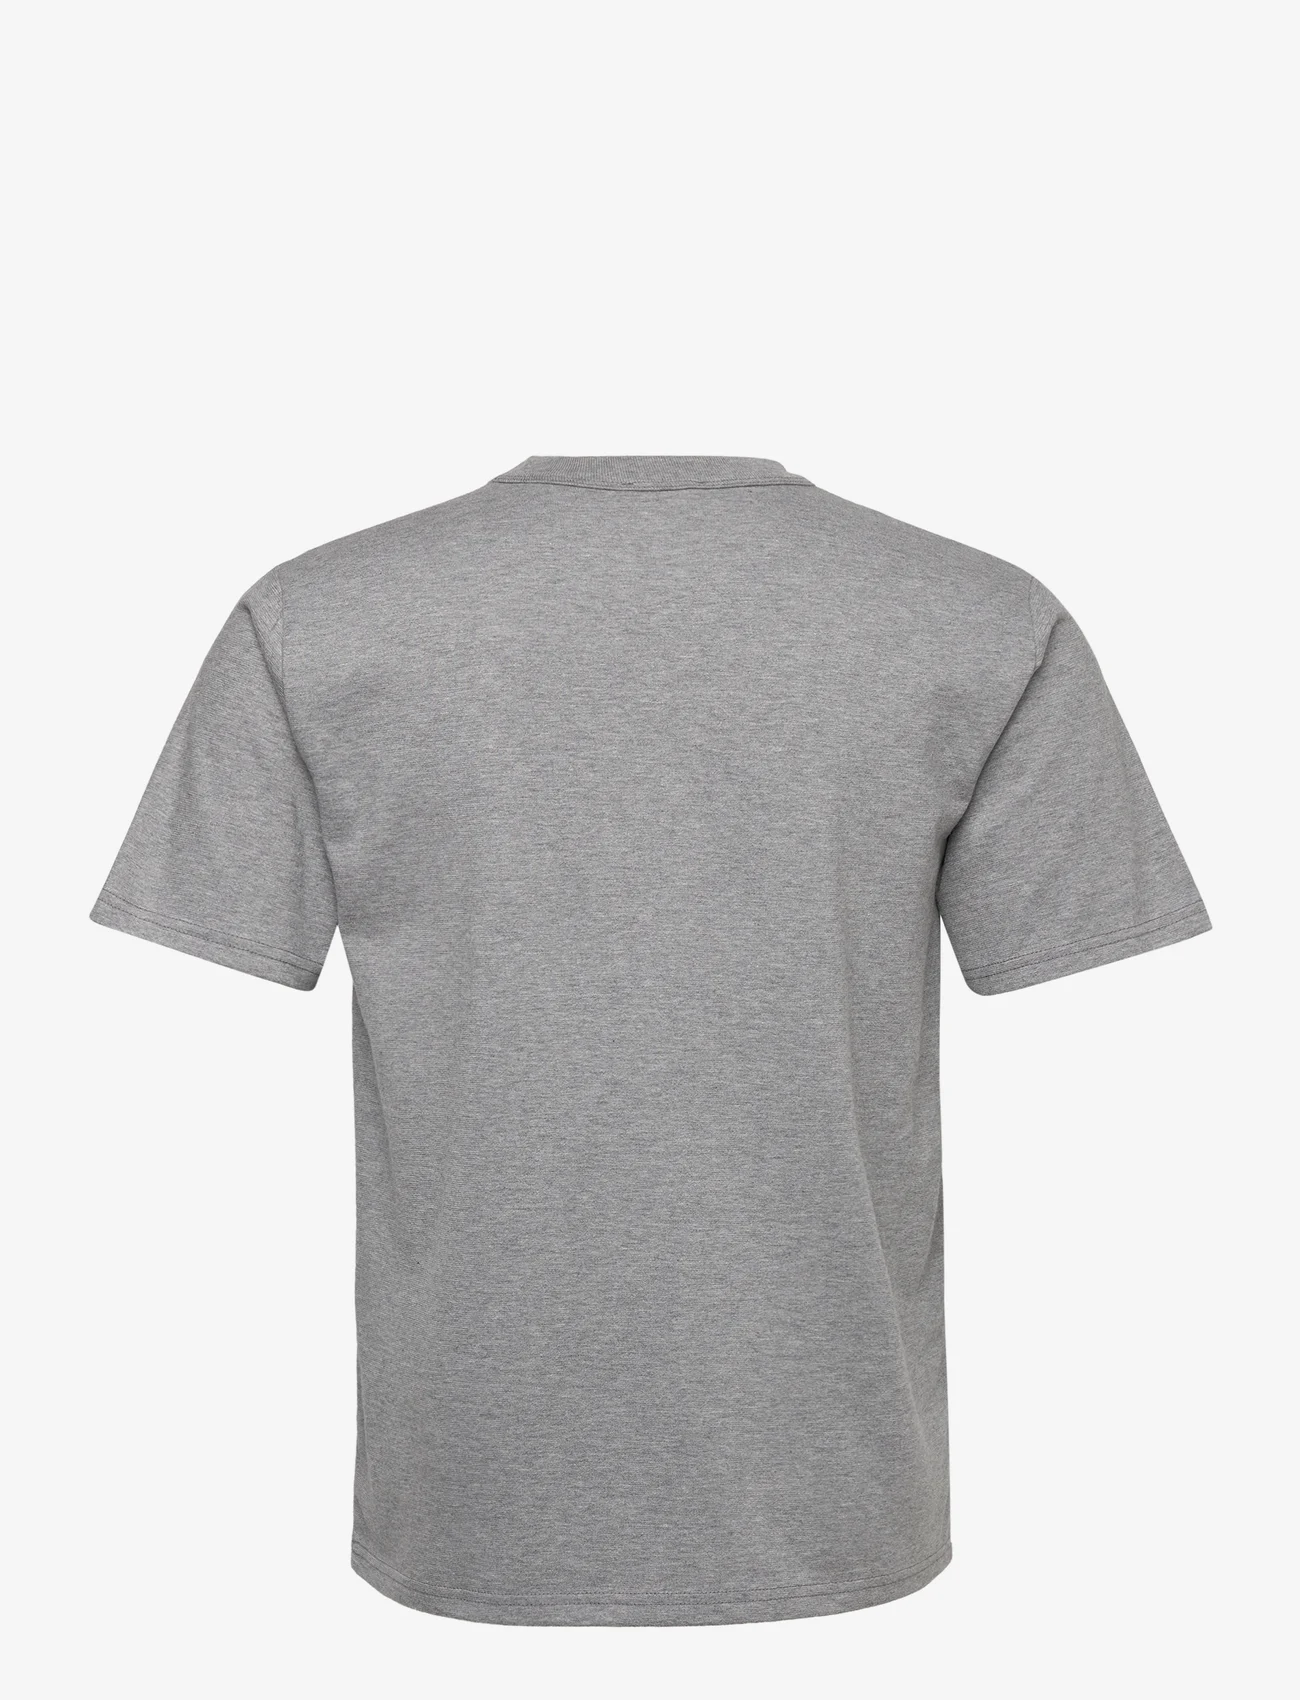 Armor Lux - Basic T-shirt "Callac" Héritage - misty grey - 1